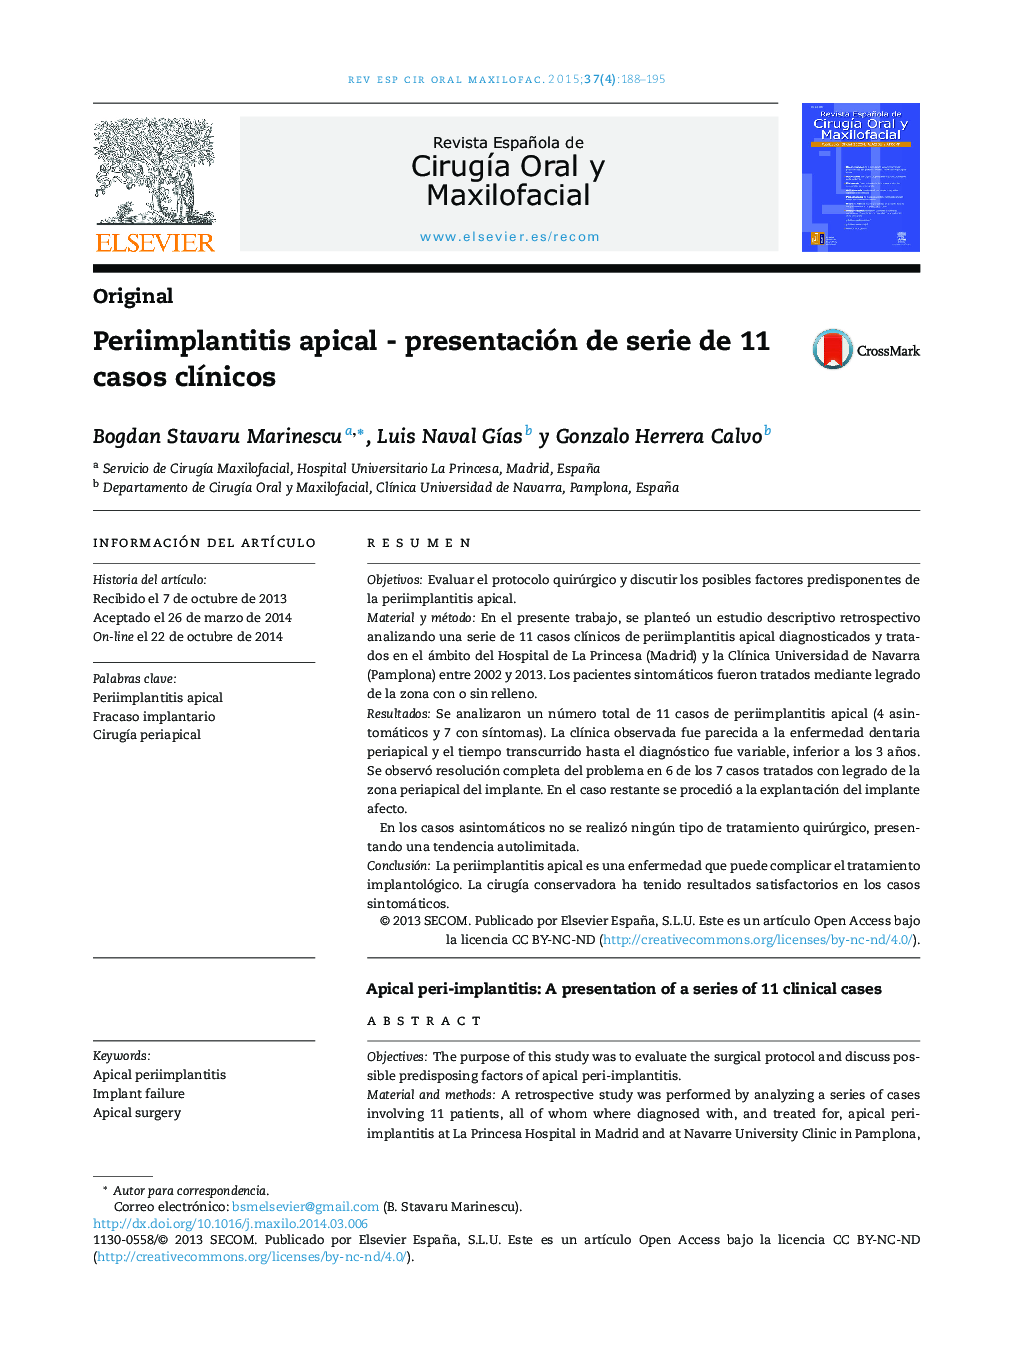 Periimplantitis apical - presentación de serie de 11 casos clínicos